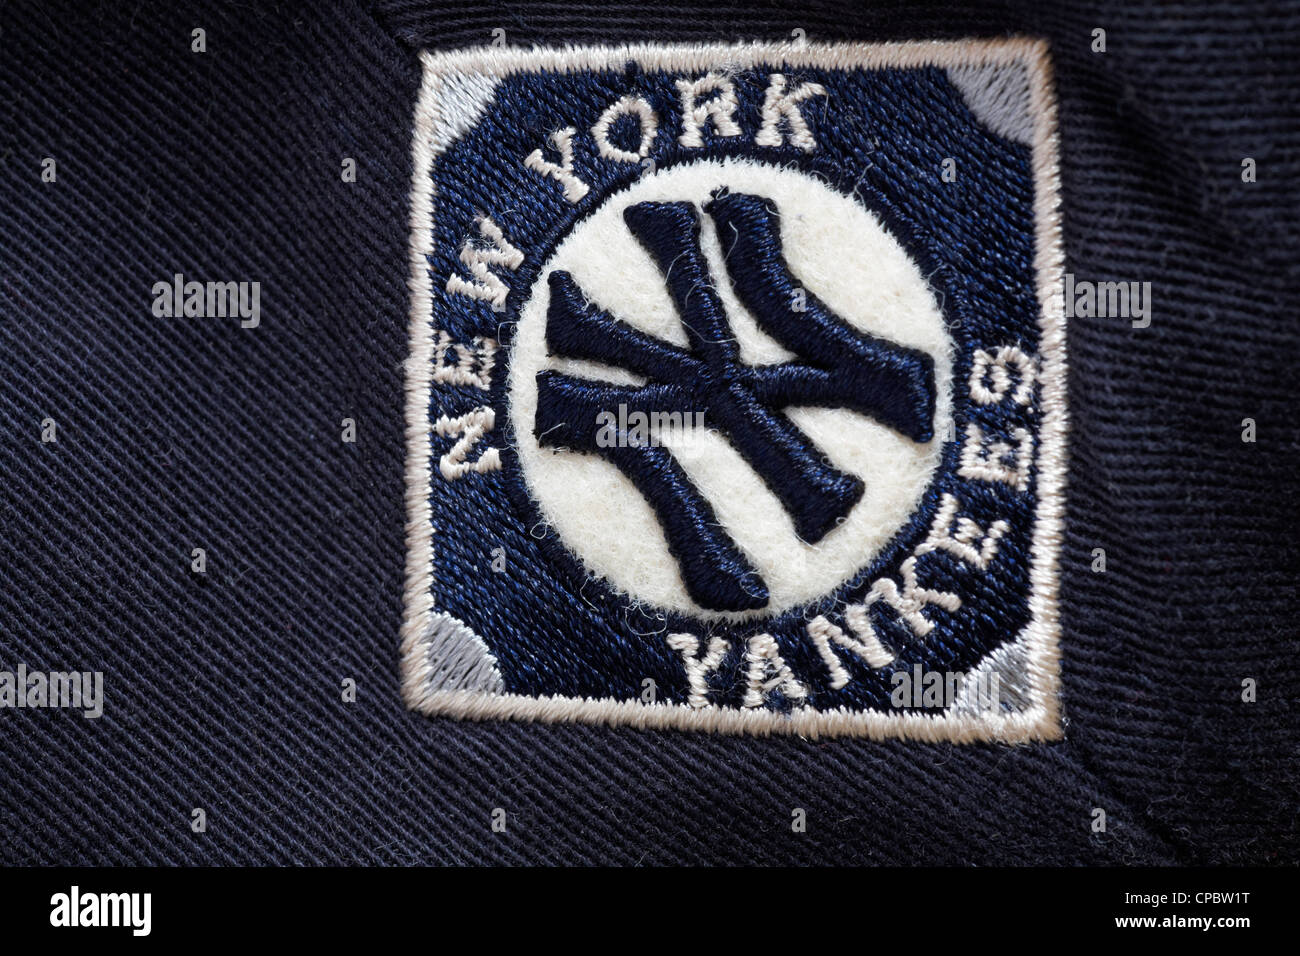 New York Yankees casquette de baseball sur piqûre Banque D'Images